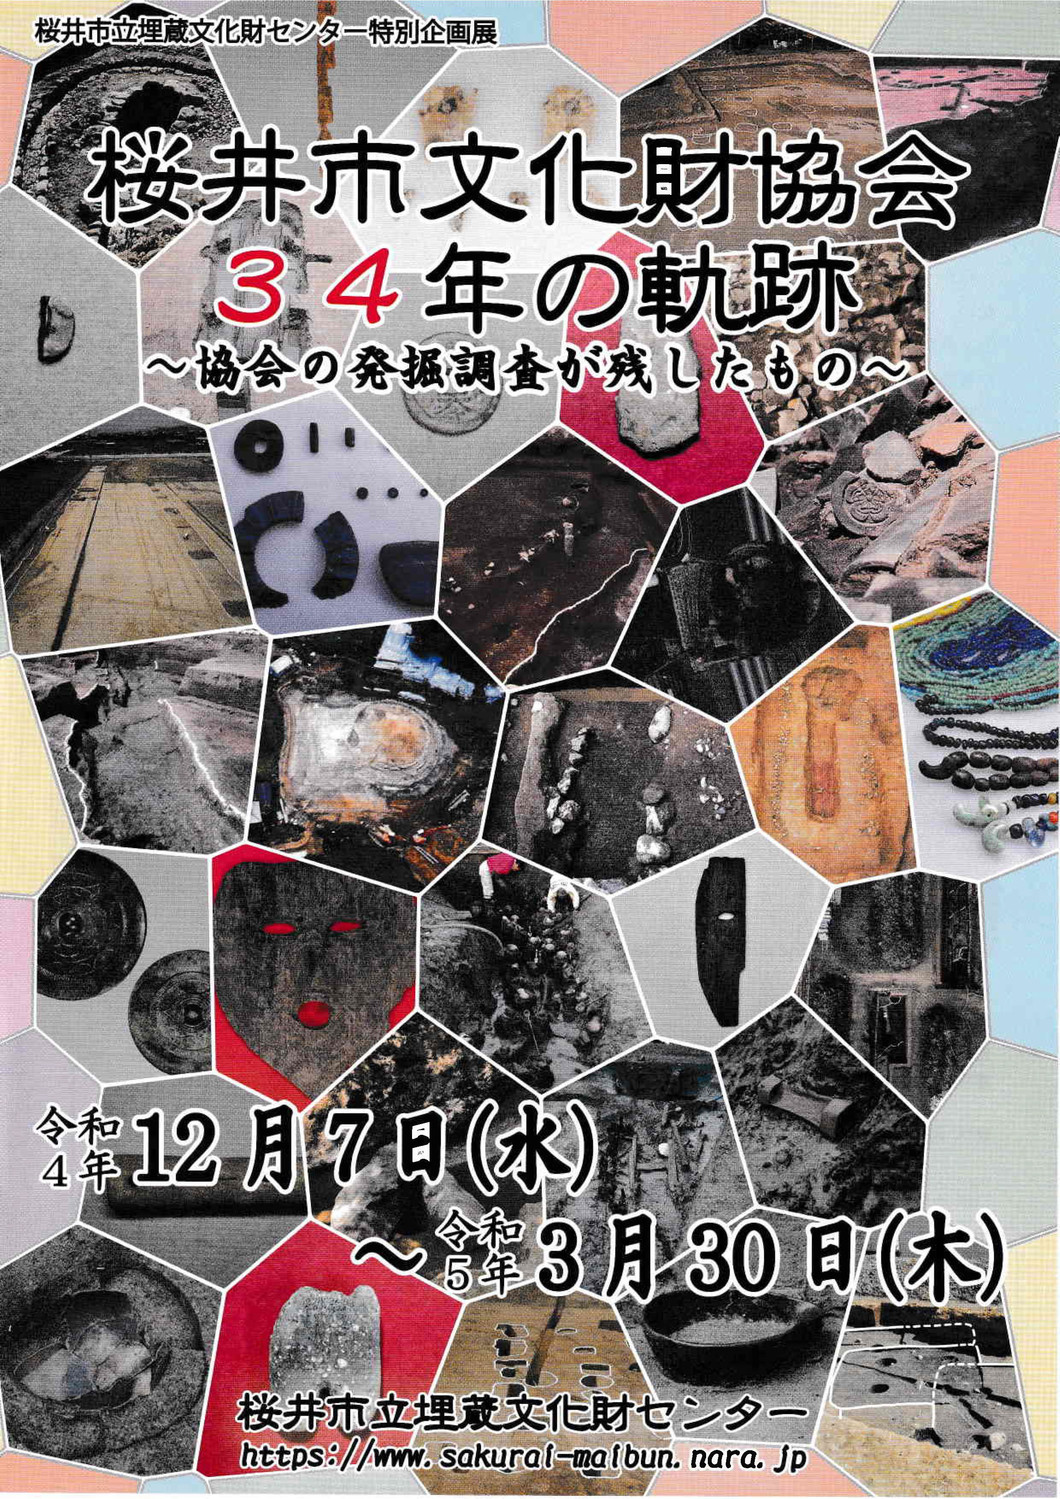 特別企画展「桜井市文化財協会３４年の軌跡～協会の発掘調査が残したもの～」